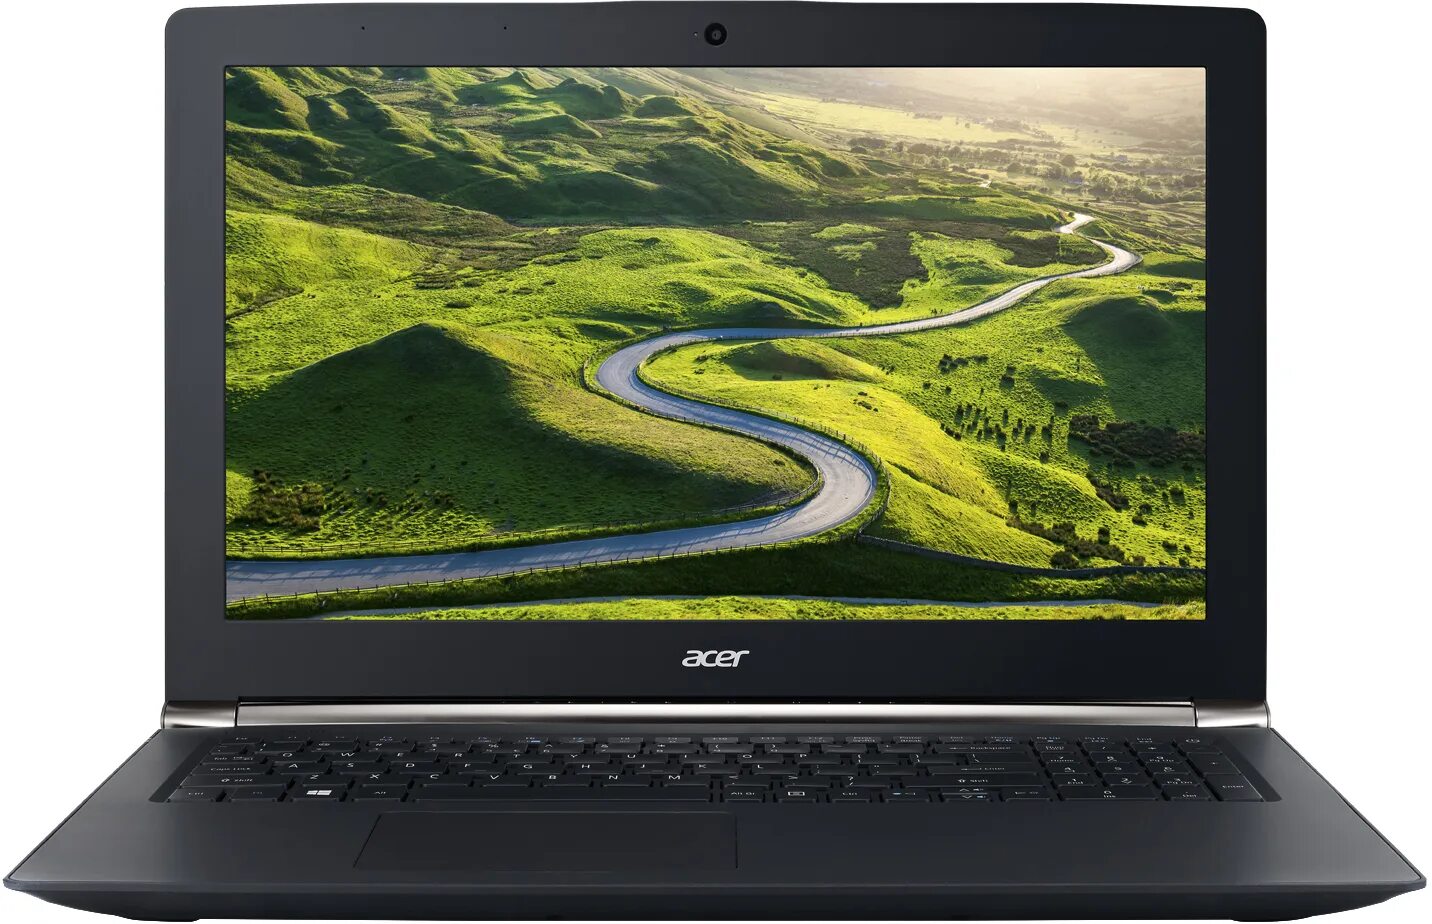 Ноутбук acer видит. Ноутбук Acer Aspire e5-575g. Ноутбук Acer Aspire es 15. Acer Aspire e5-576g. Aspire e5-475g.